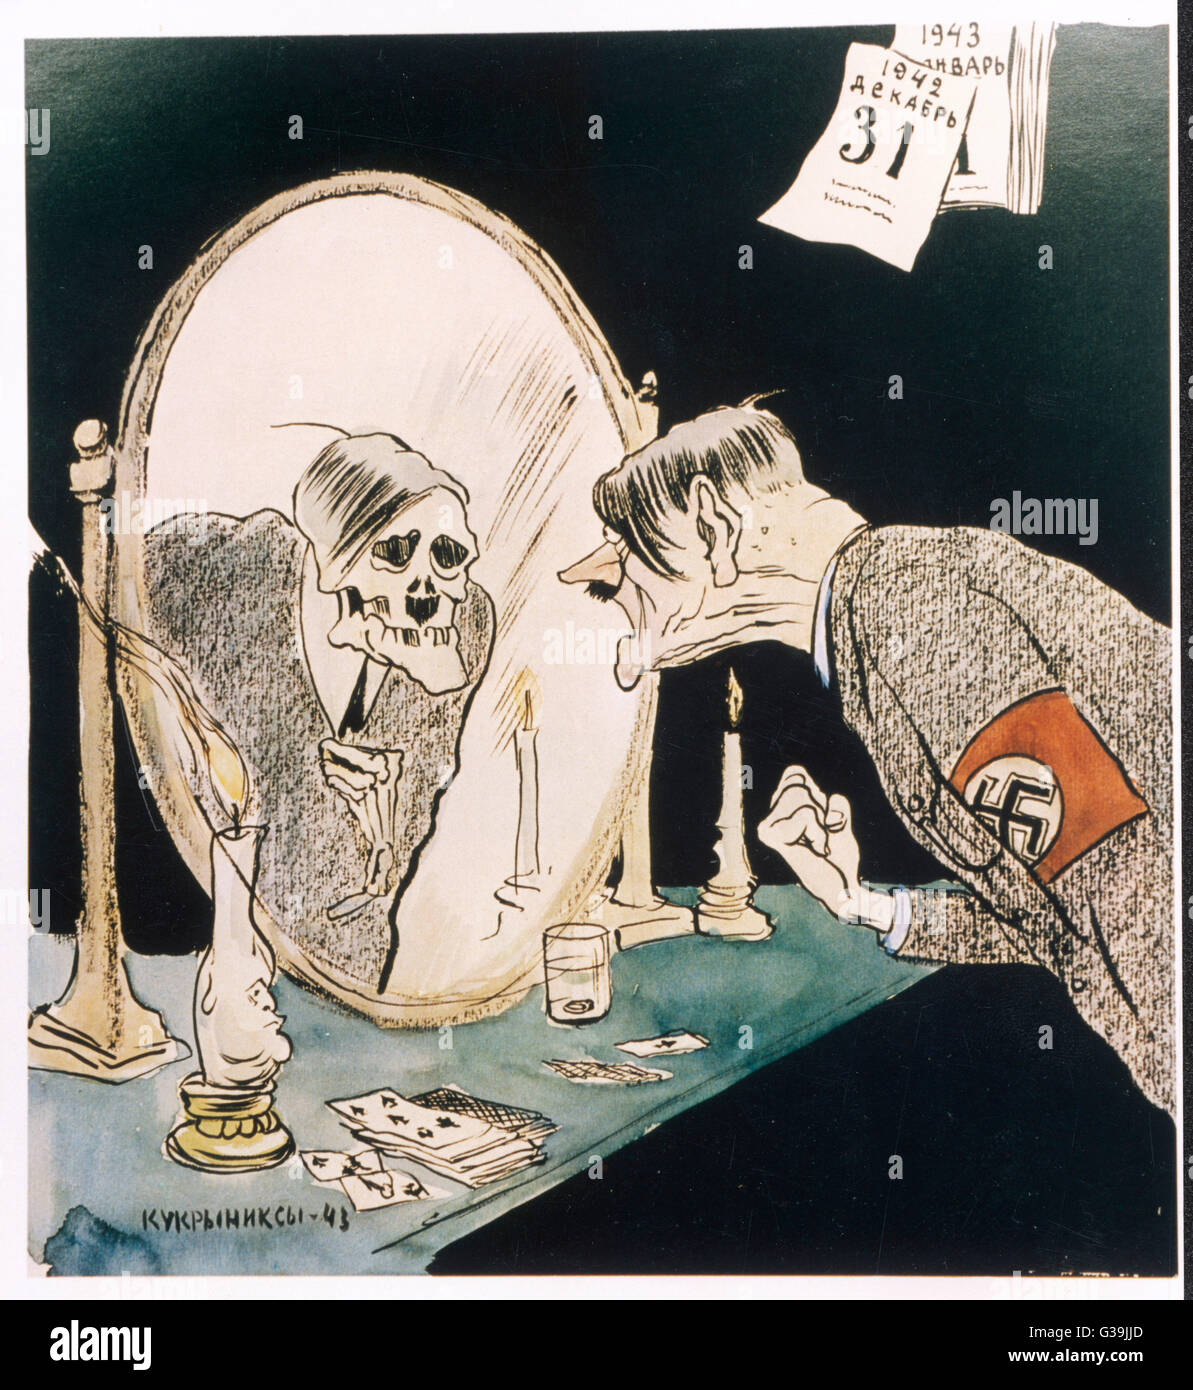 ADOLF HITLER der Kalender an der Wand Dezember 1942 datiert, Hitler starrt entrüstet in seinem Skelett Reflexion, als Symbol der deutschen Niederlage bei Stalingrad-Datum: 1942 Stockfoto